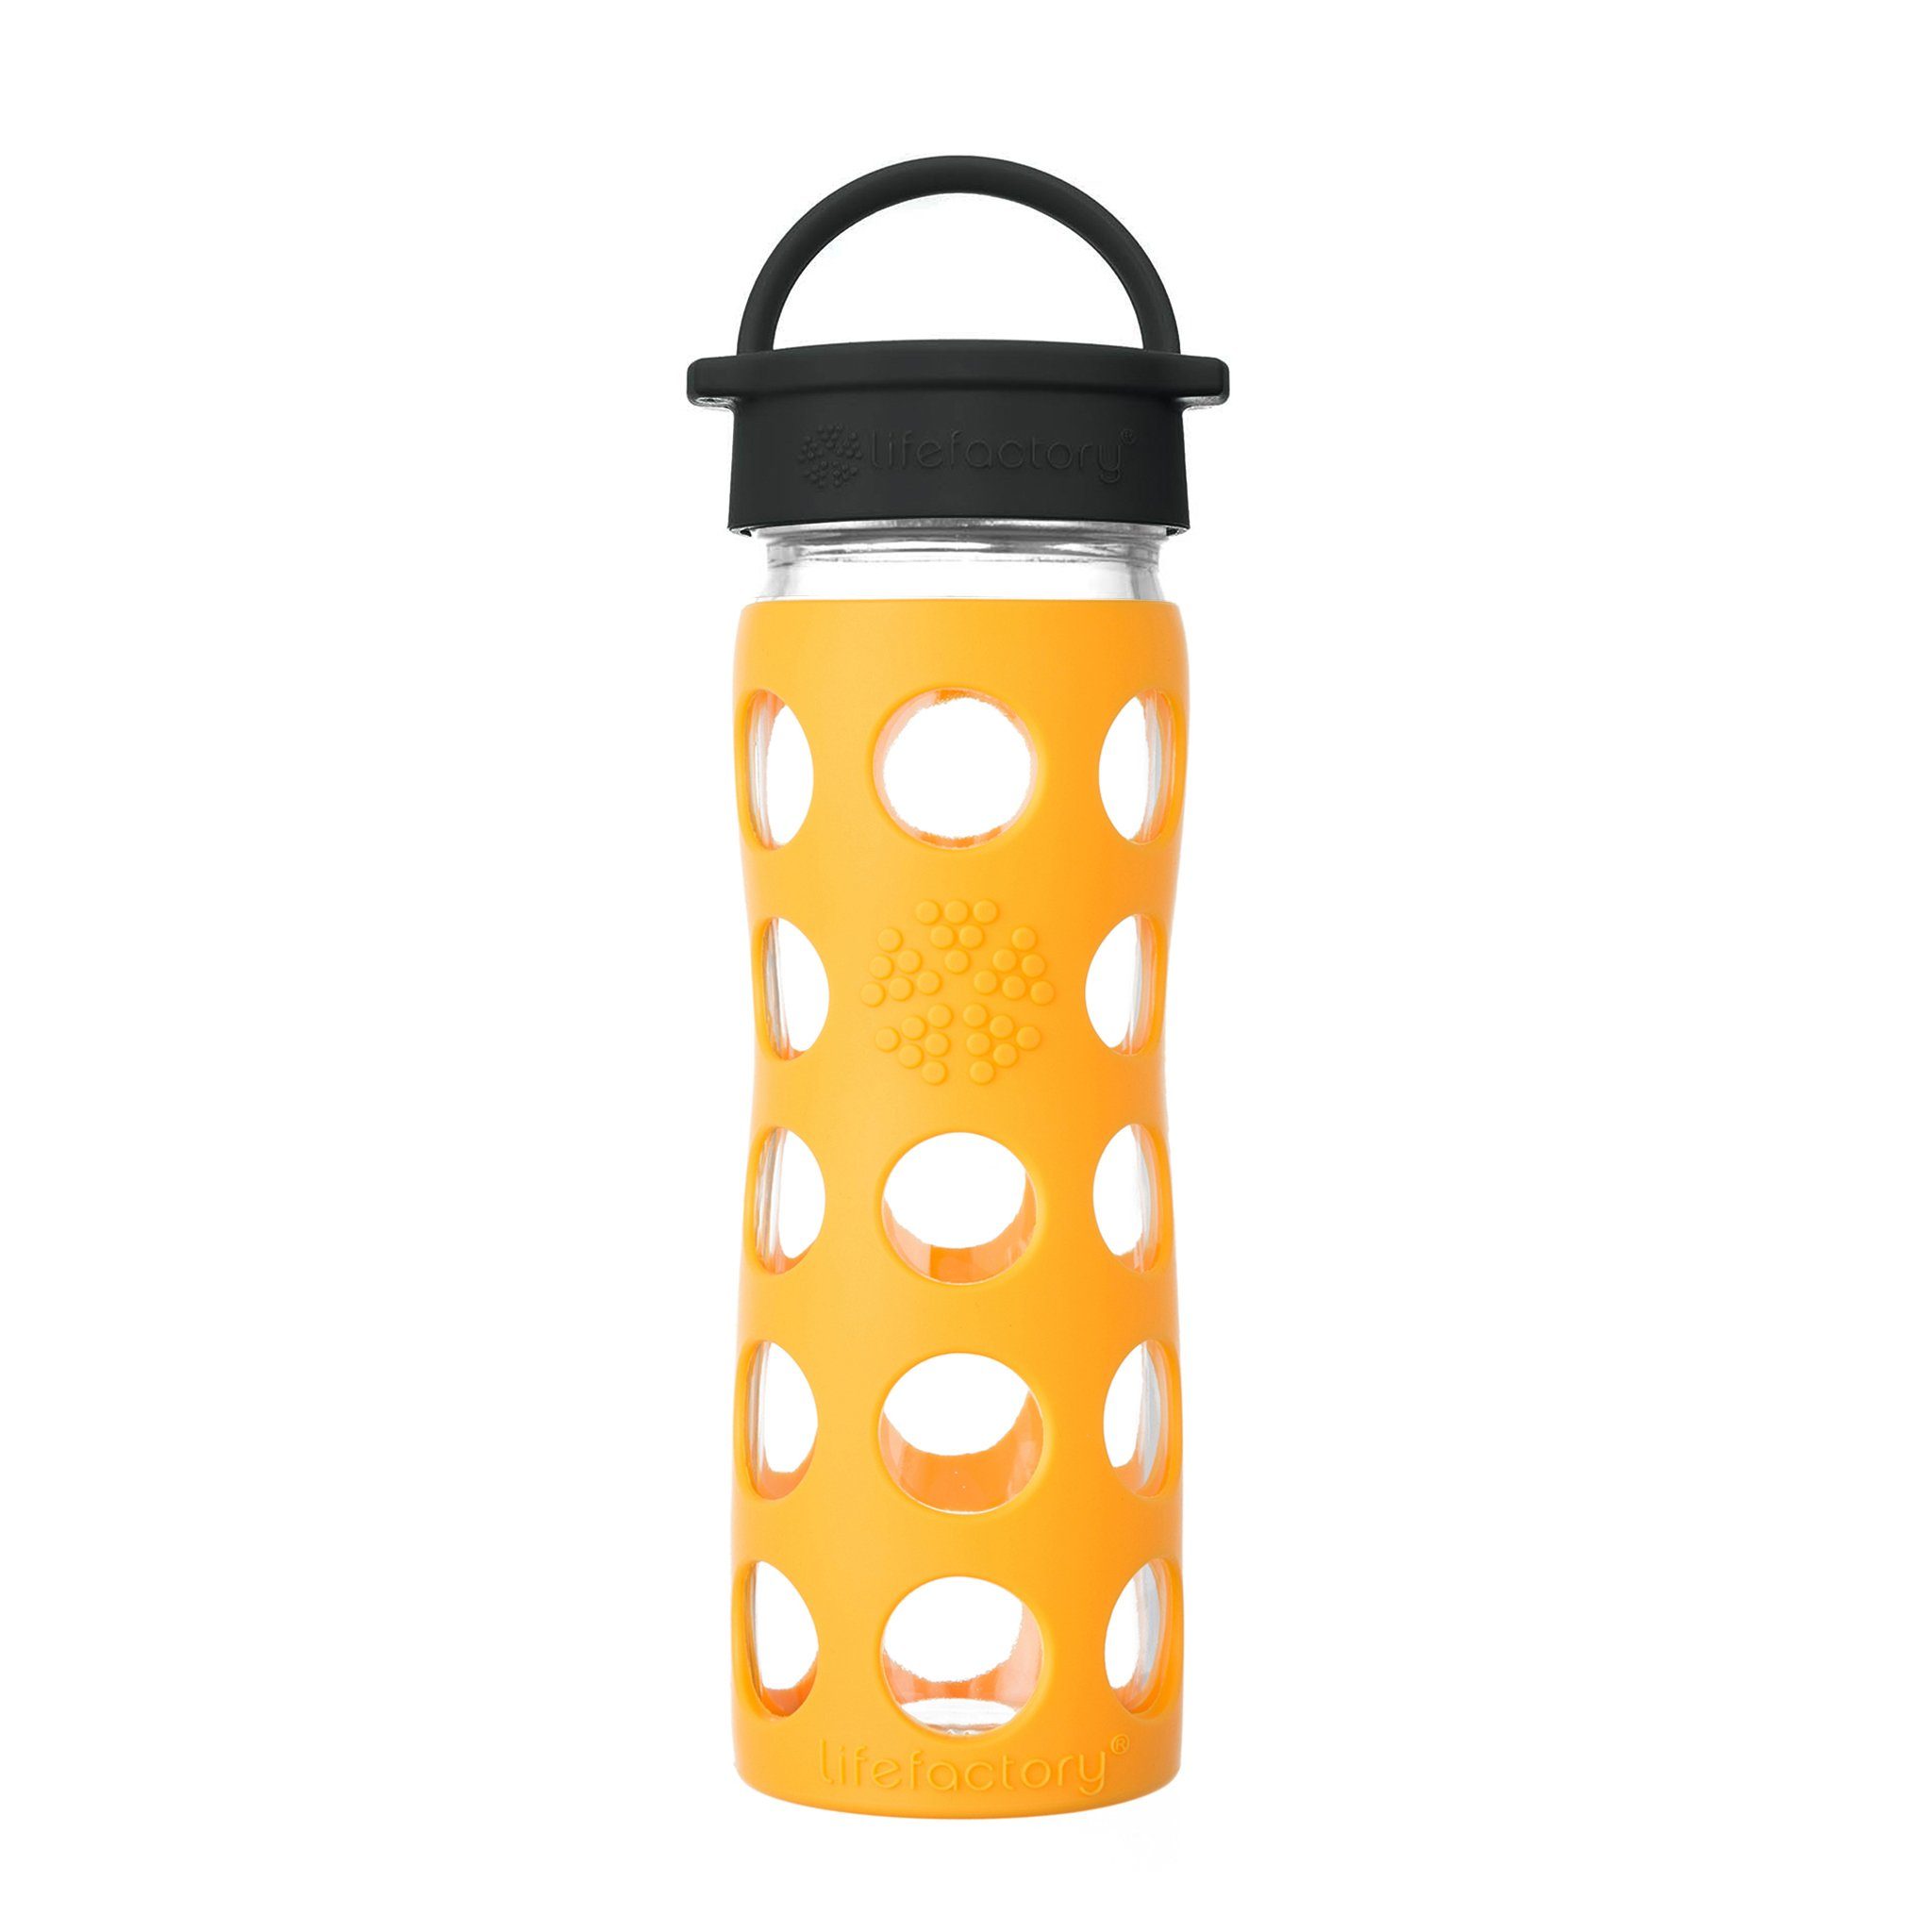 Silikonhülle Babyflasche, Lifefactory 475ml marigold Glas und Lifefactory Schraubverschluss, mit Flasche